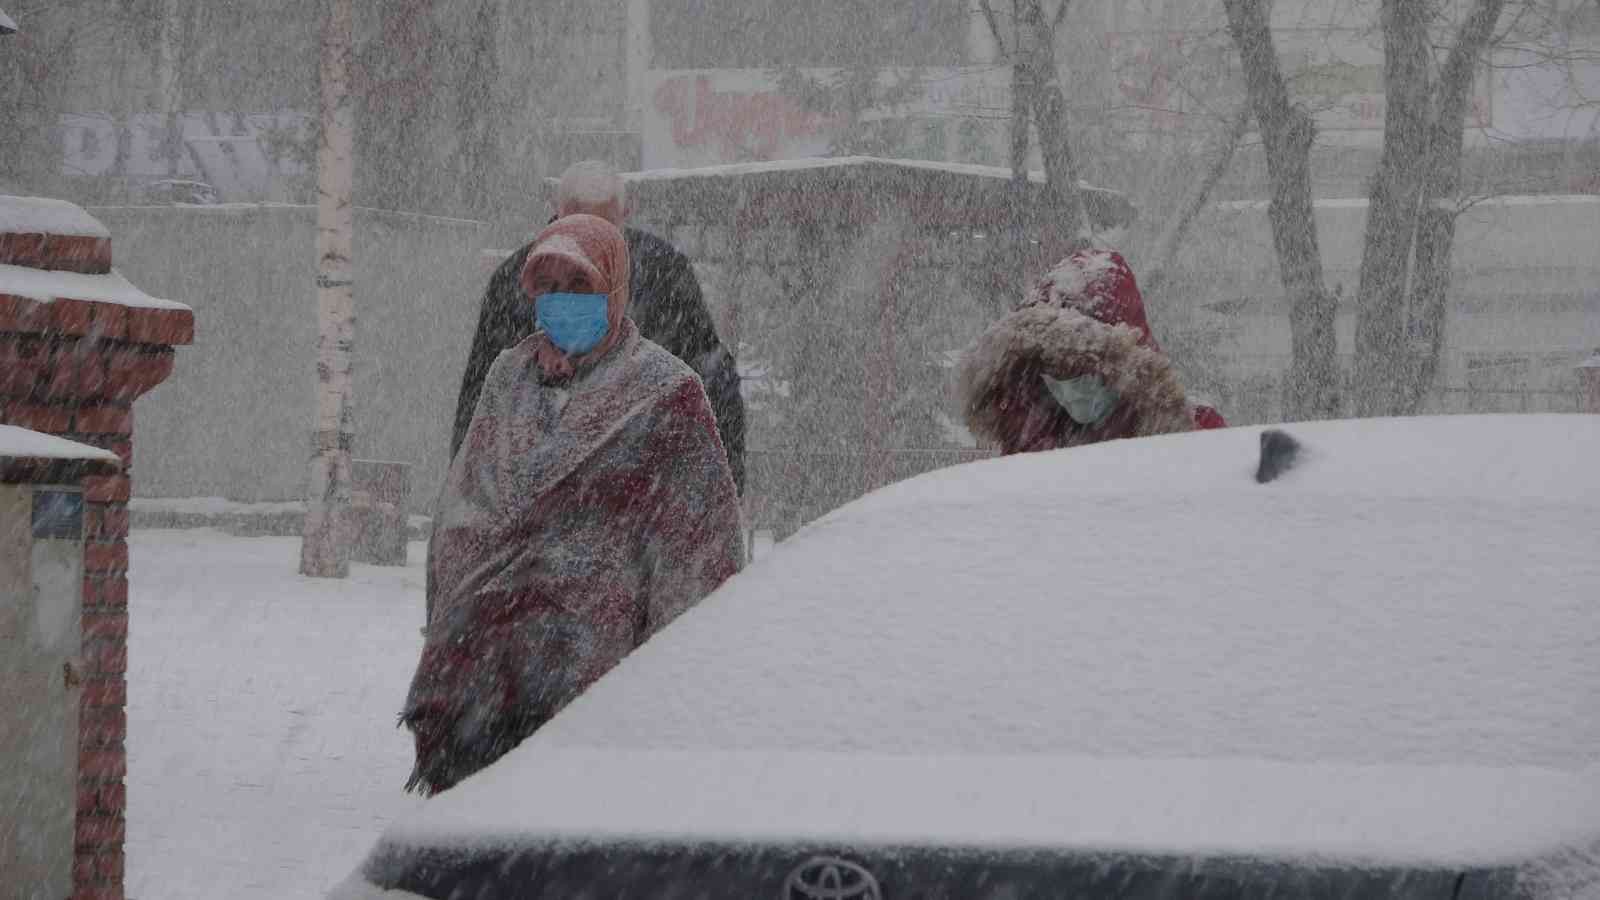 Ardahan’ın Posof ilçesinde köy yolları kapandı, okullar tatil edildi #ardahan